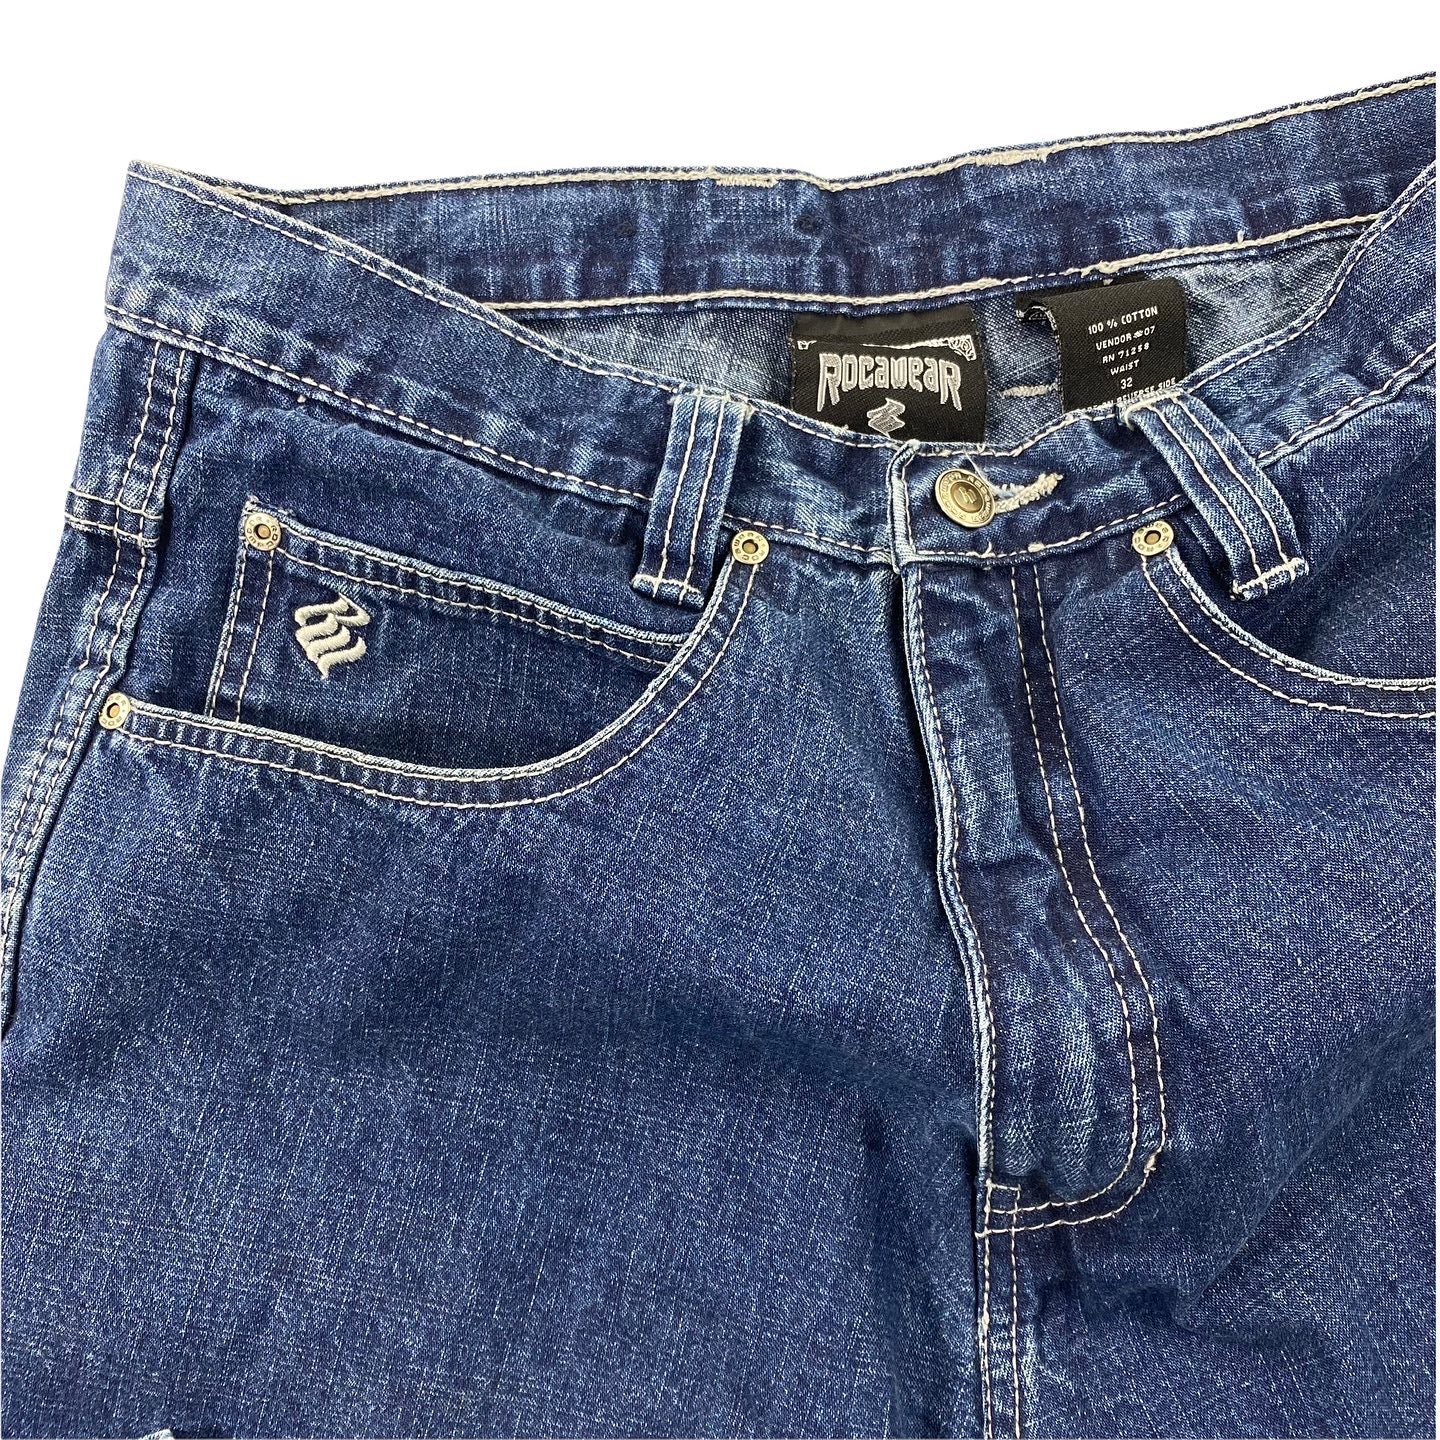 Y2K Rocawear jeans. 32/34